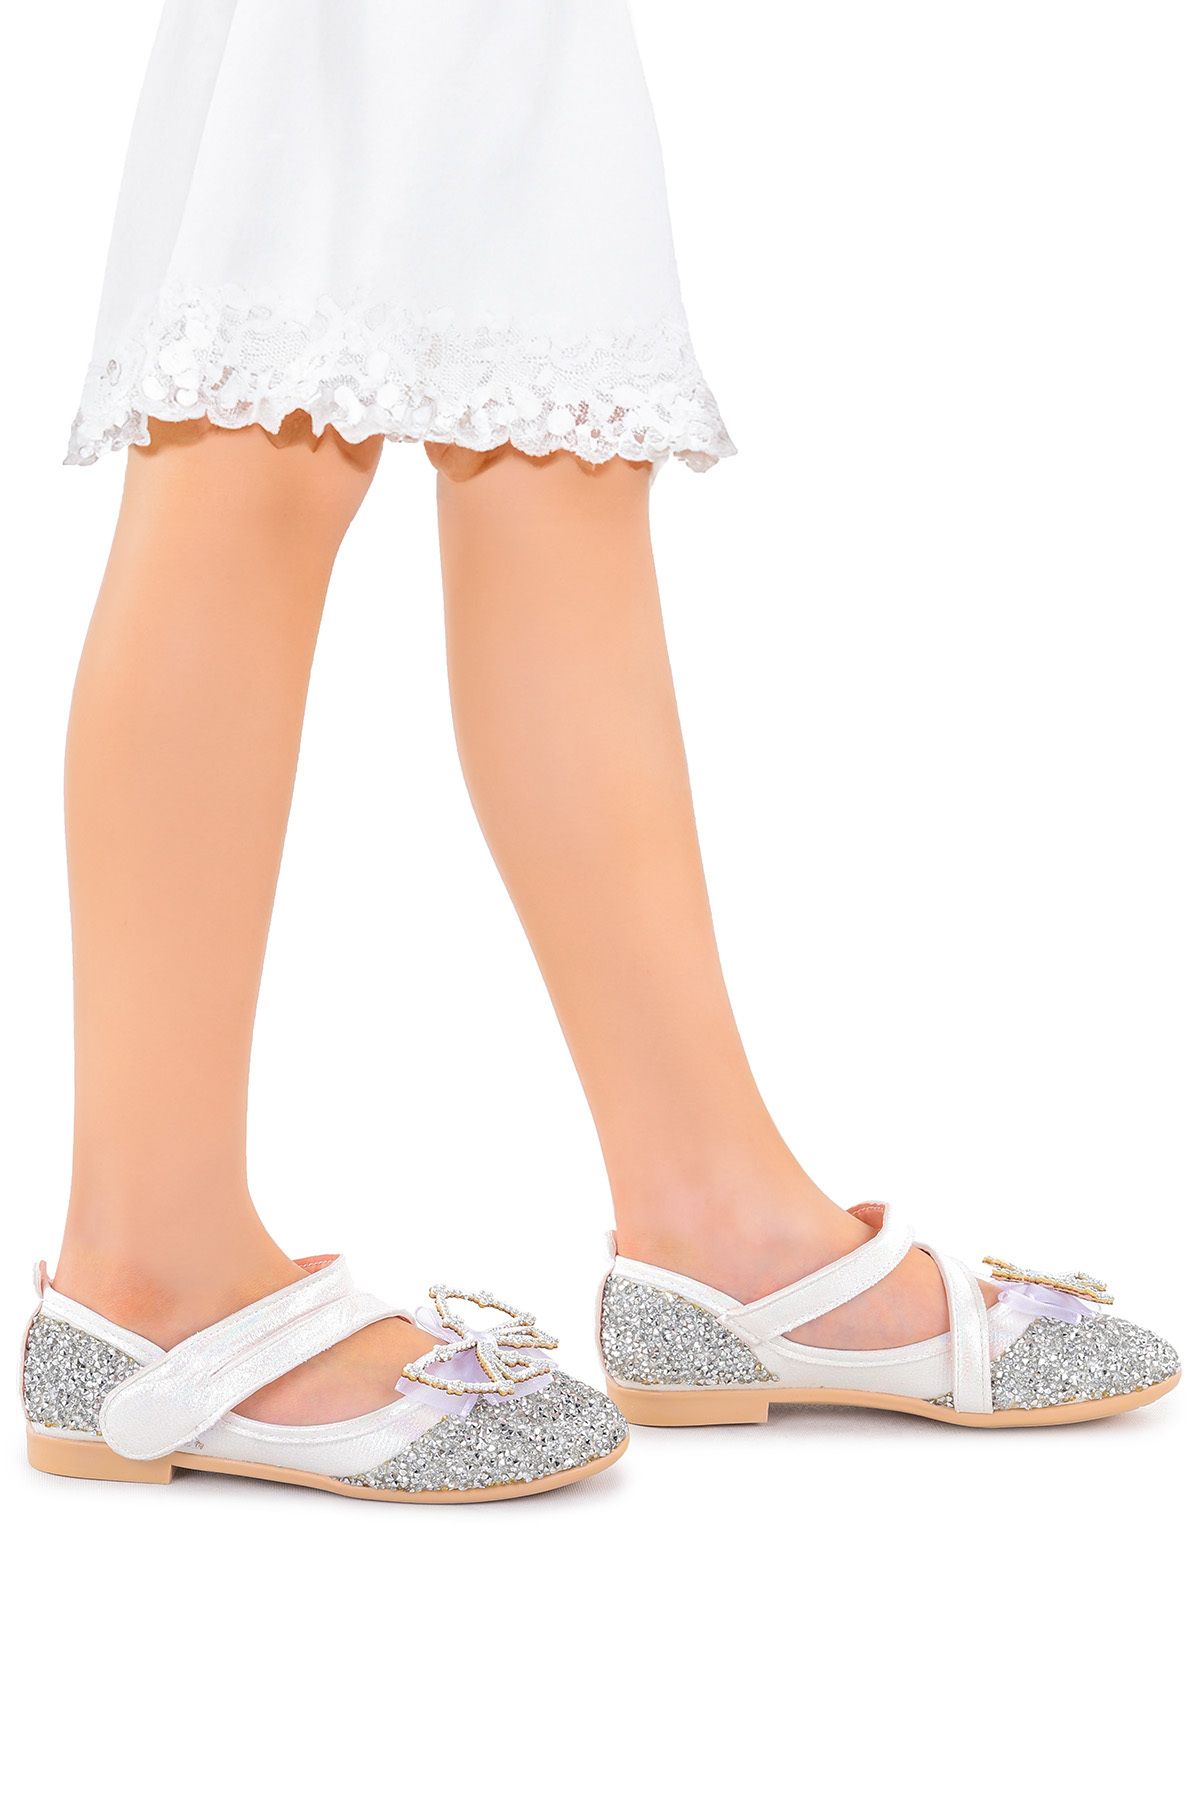 Kiko Kids Vakko Cırtlı Fiyonklu Kız Bebek Babet Ayakkabı Arç 08